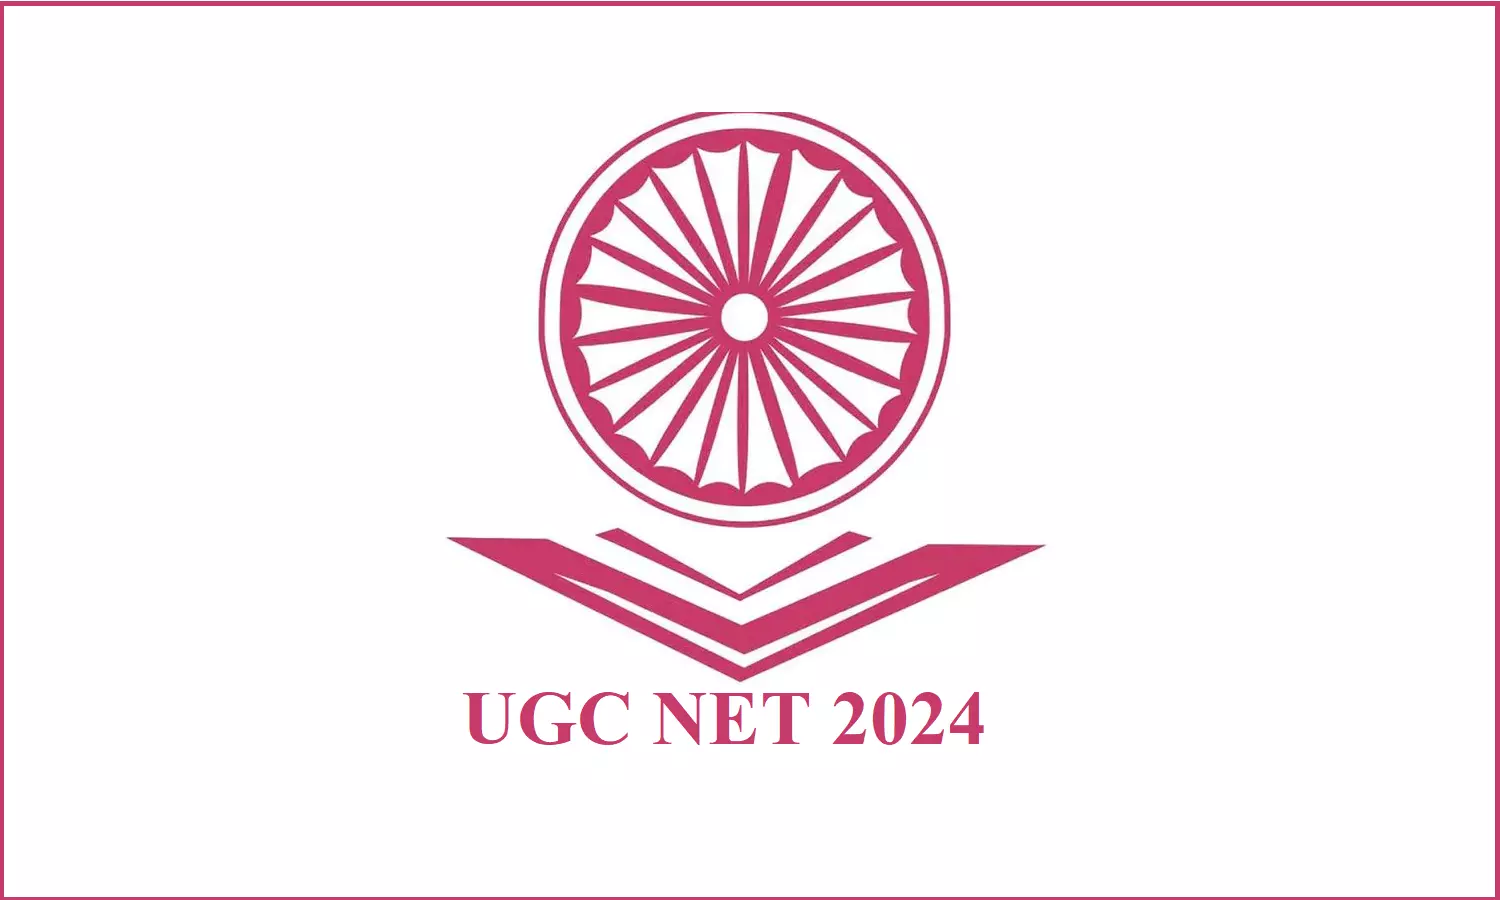 UGC NET Result 2024: यूजीसी नेट 2024 रिजल्ट की डेट टली, एनटीए ने जारी किया नोटिस